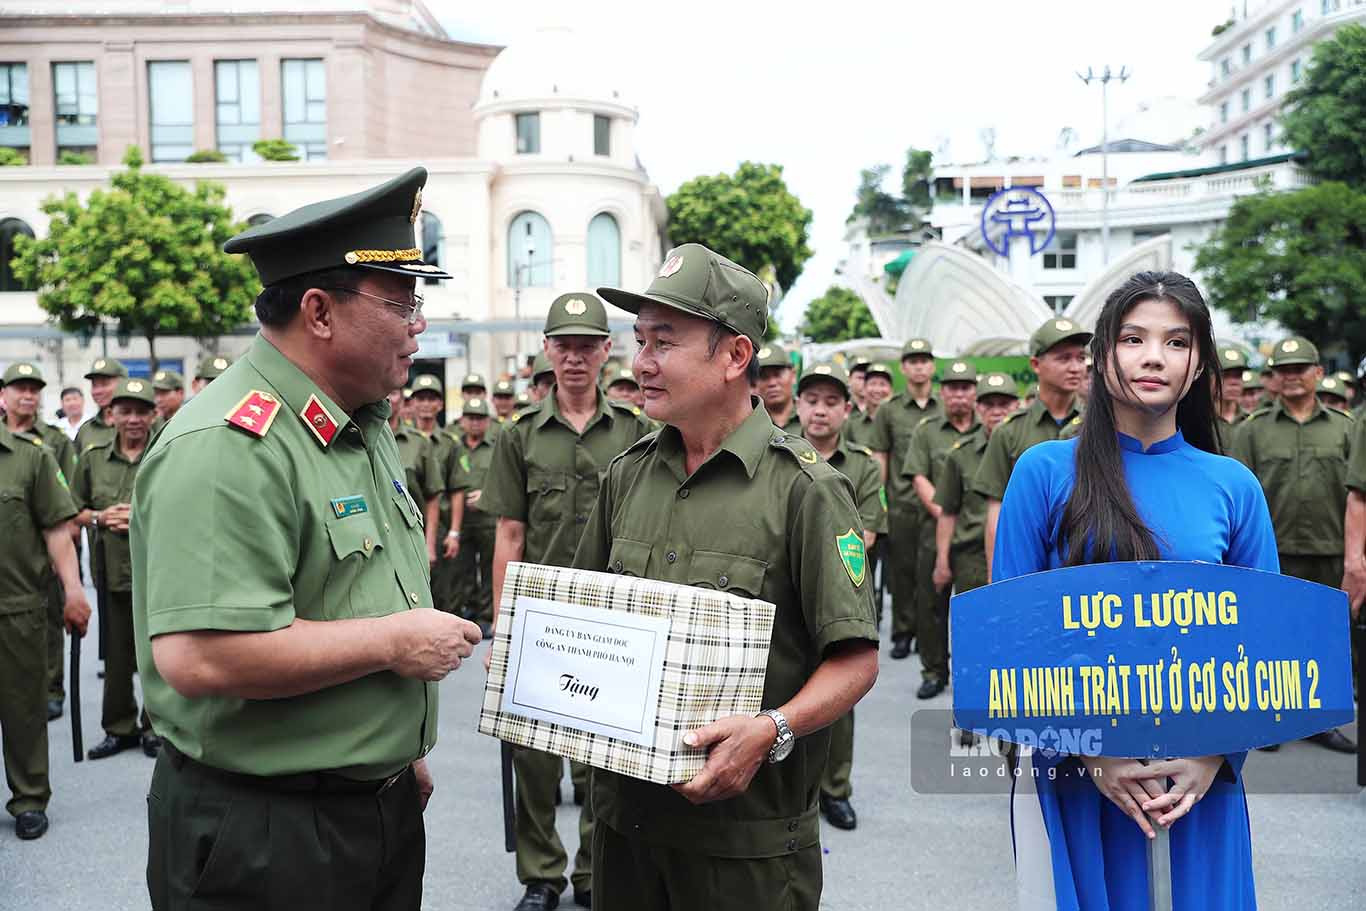 Trung tướng Nguyễn Hải Trung - Giám đốc Công an TP Hà Nội động viên các thành viên lực lượng tham gia bảo vệ an ninh trật tự ở cơ sở, cố gắng hoàn thành tốt mọi nhiệm vụ được giao.